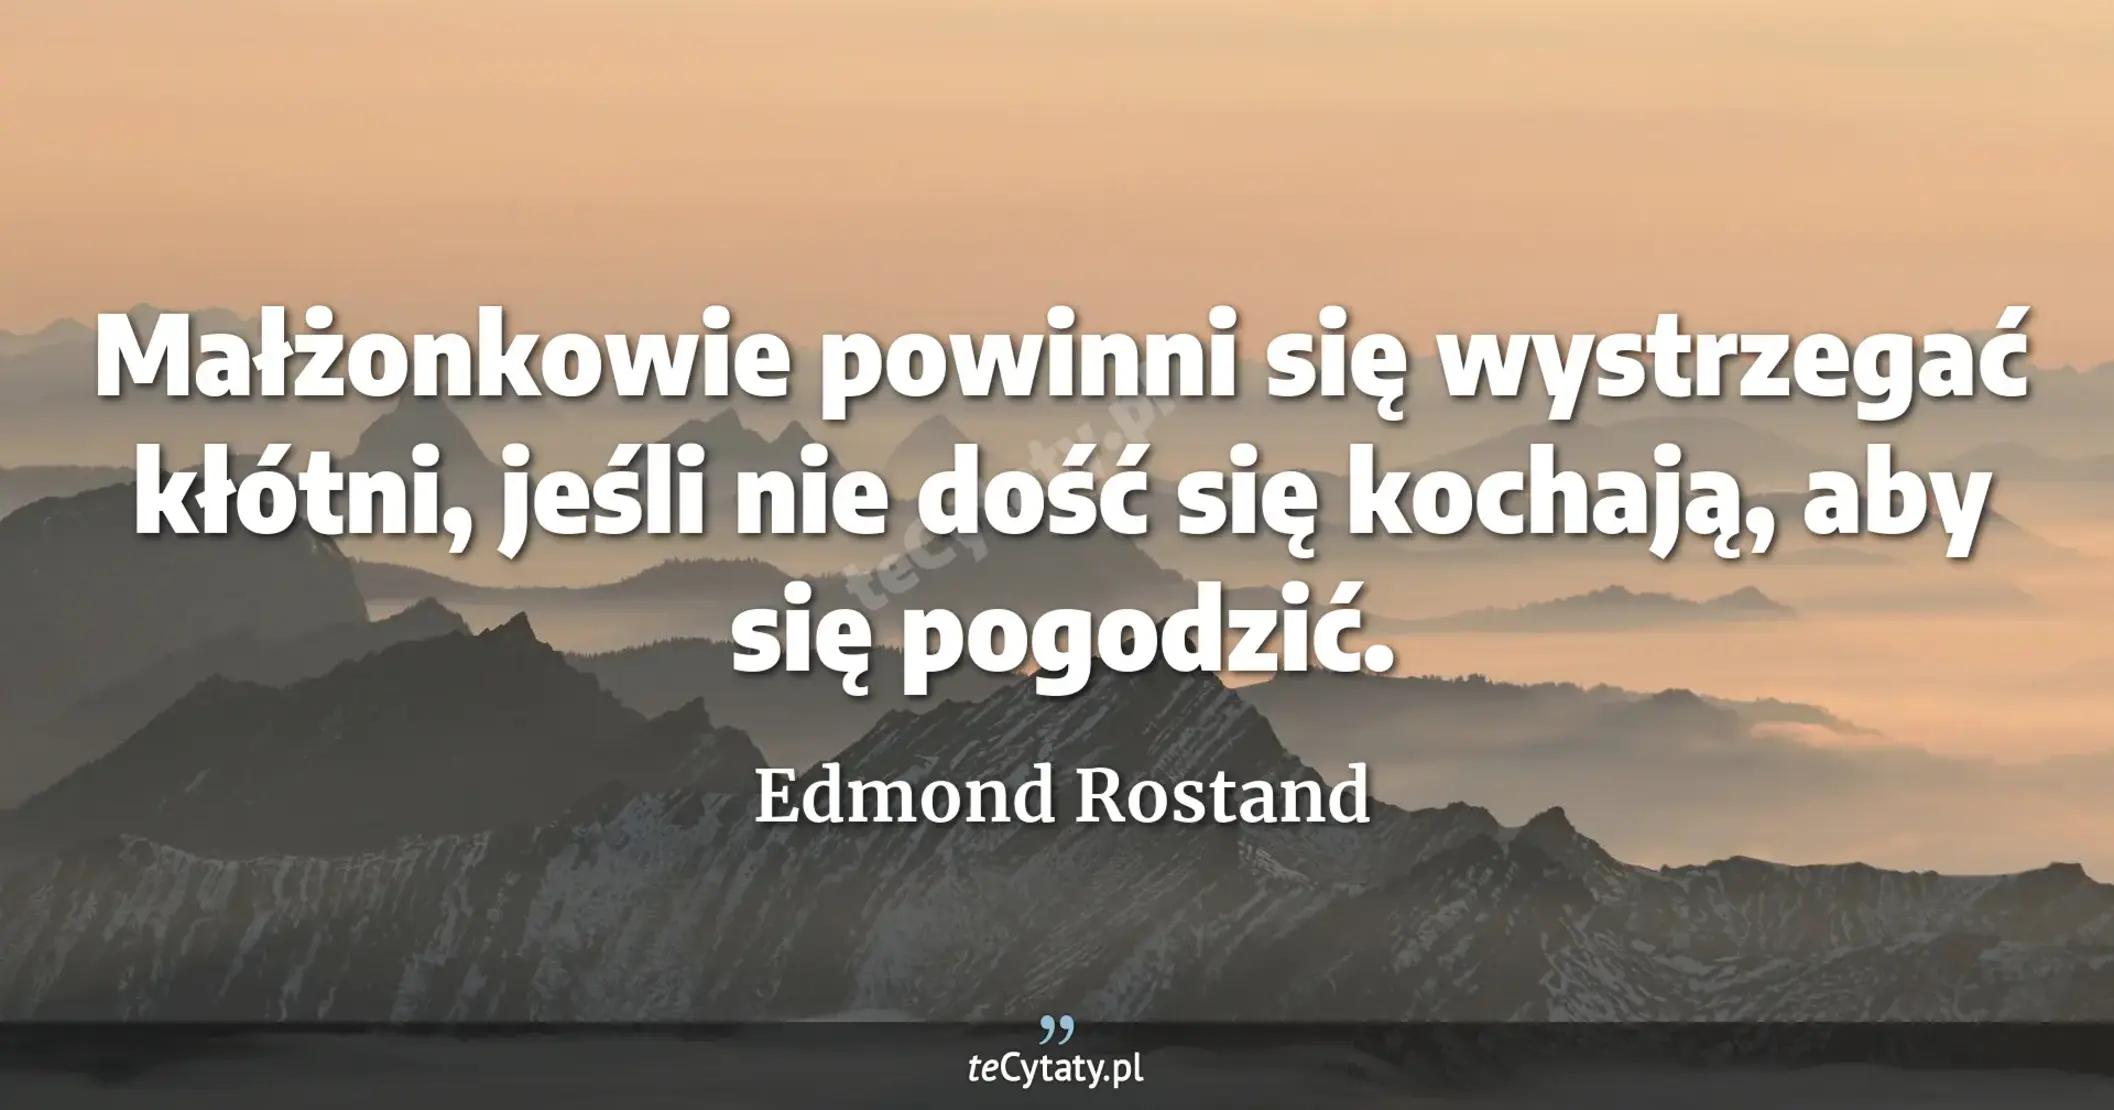 Małżonkowie powinni się wystrzegać kłótni, jeśli nie dość się kochają, aby się pogodzić. - Edmond Rostand